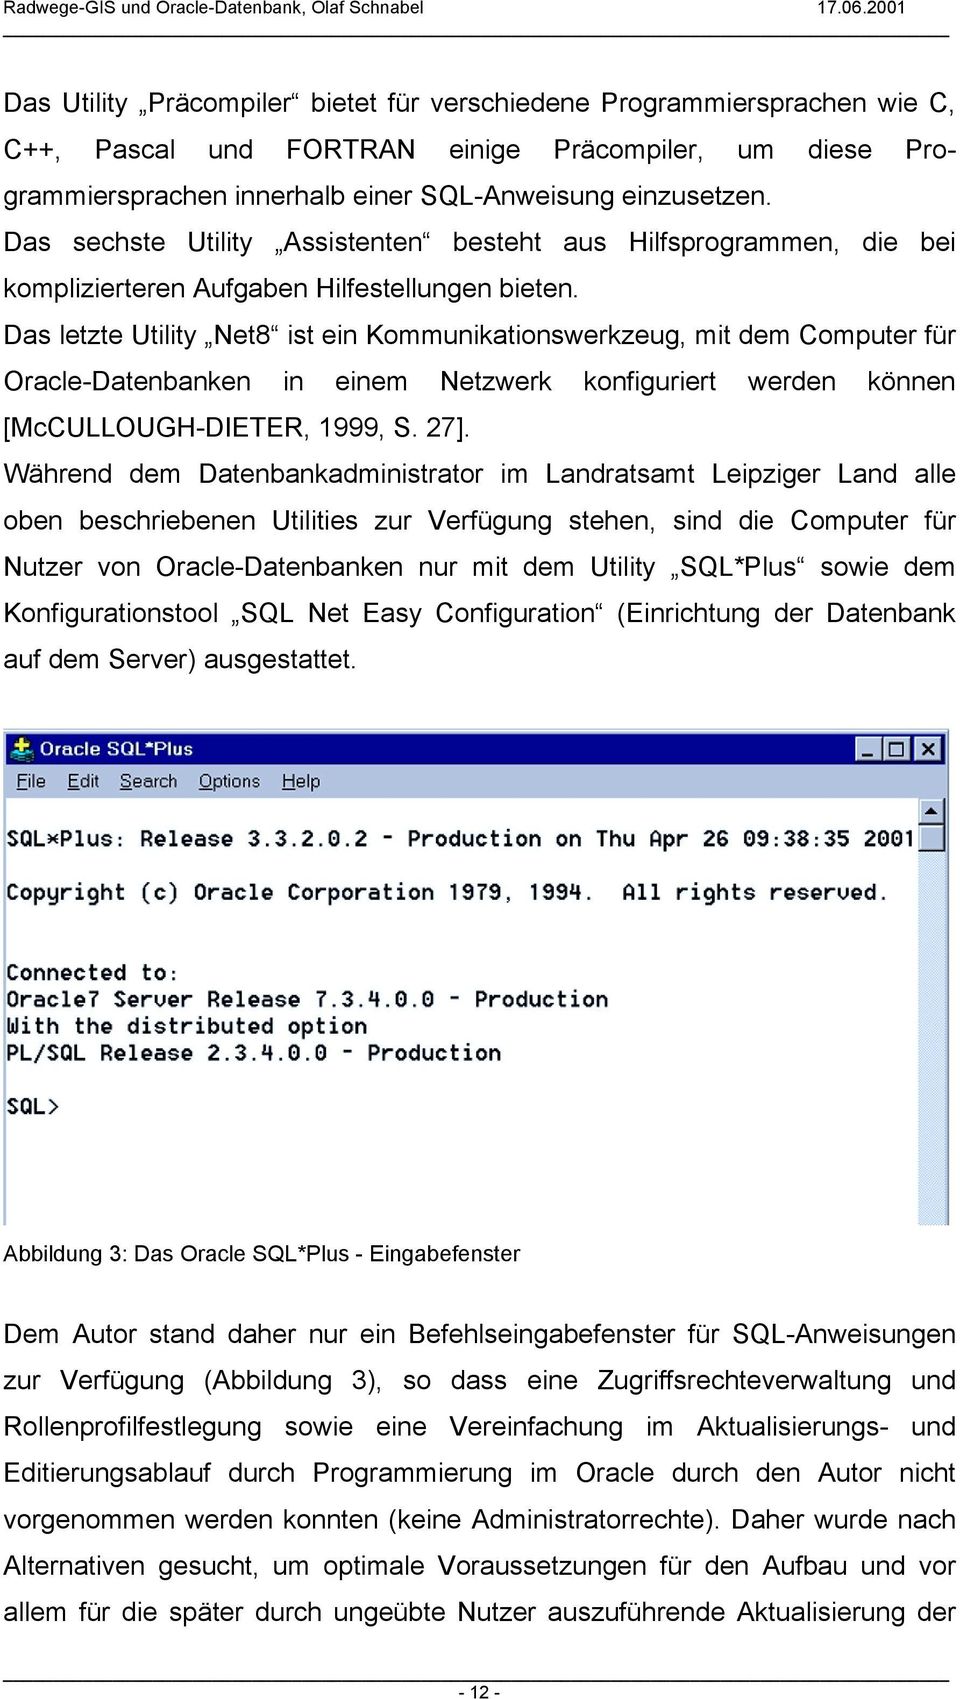 Das letzte Utility Net8 ist ein Kommunikationswerkzeug, mit dem Computer für Oracle-Datenbanken in einem Netzwerk konfiguriert werden können [McCULLOUGH-DIETER, 1999, S. 27].